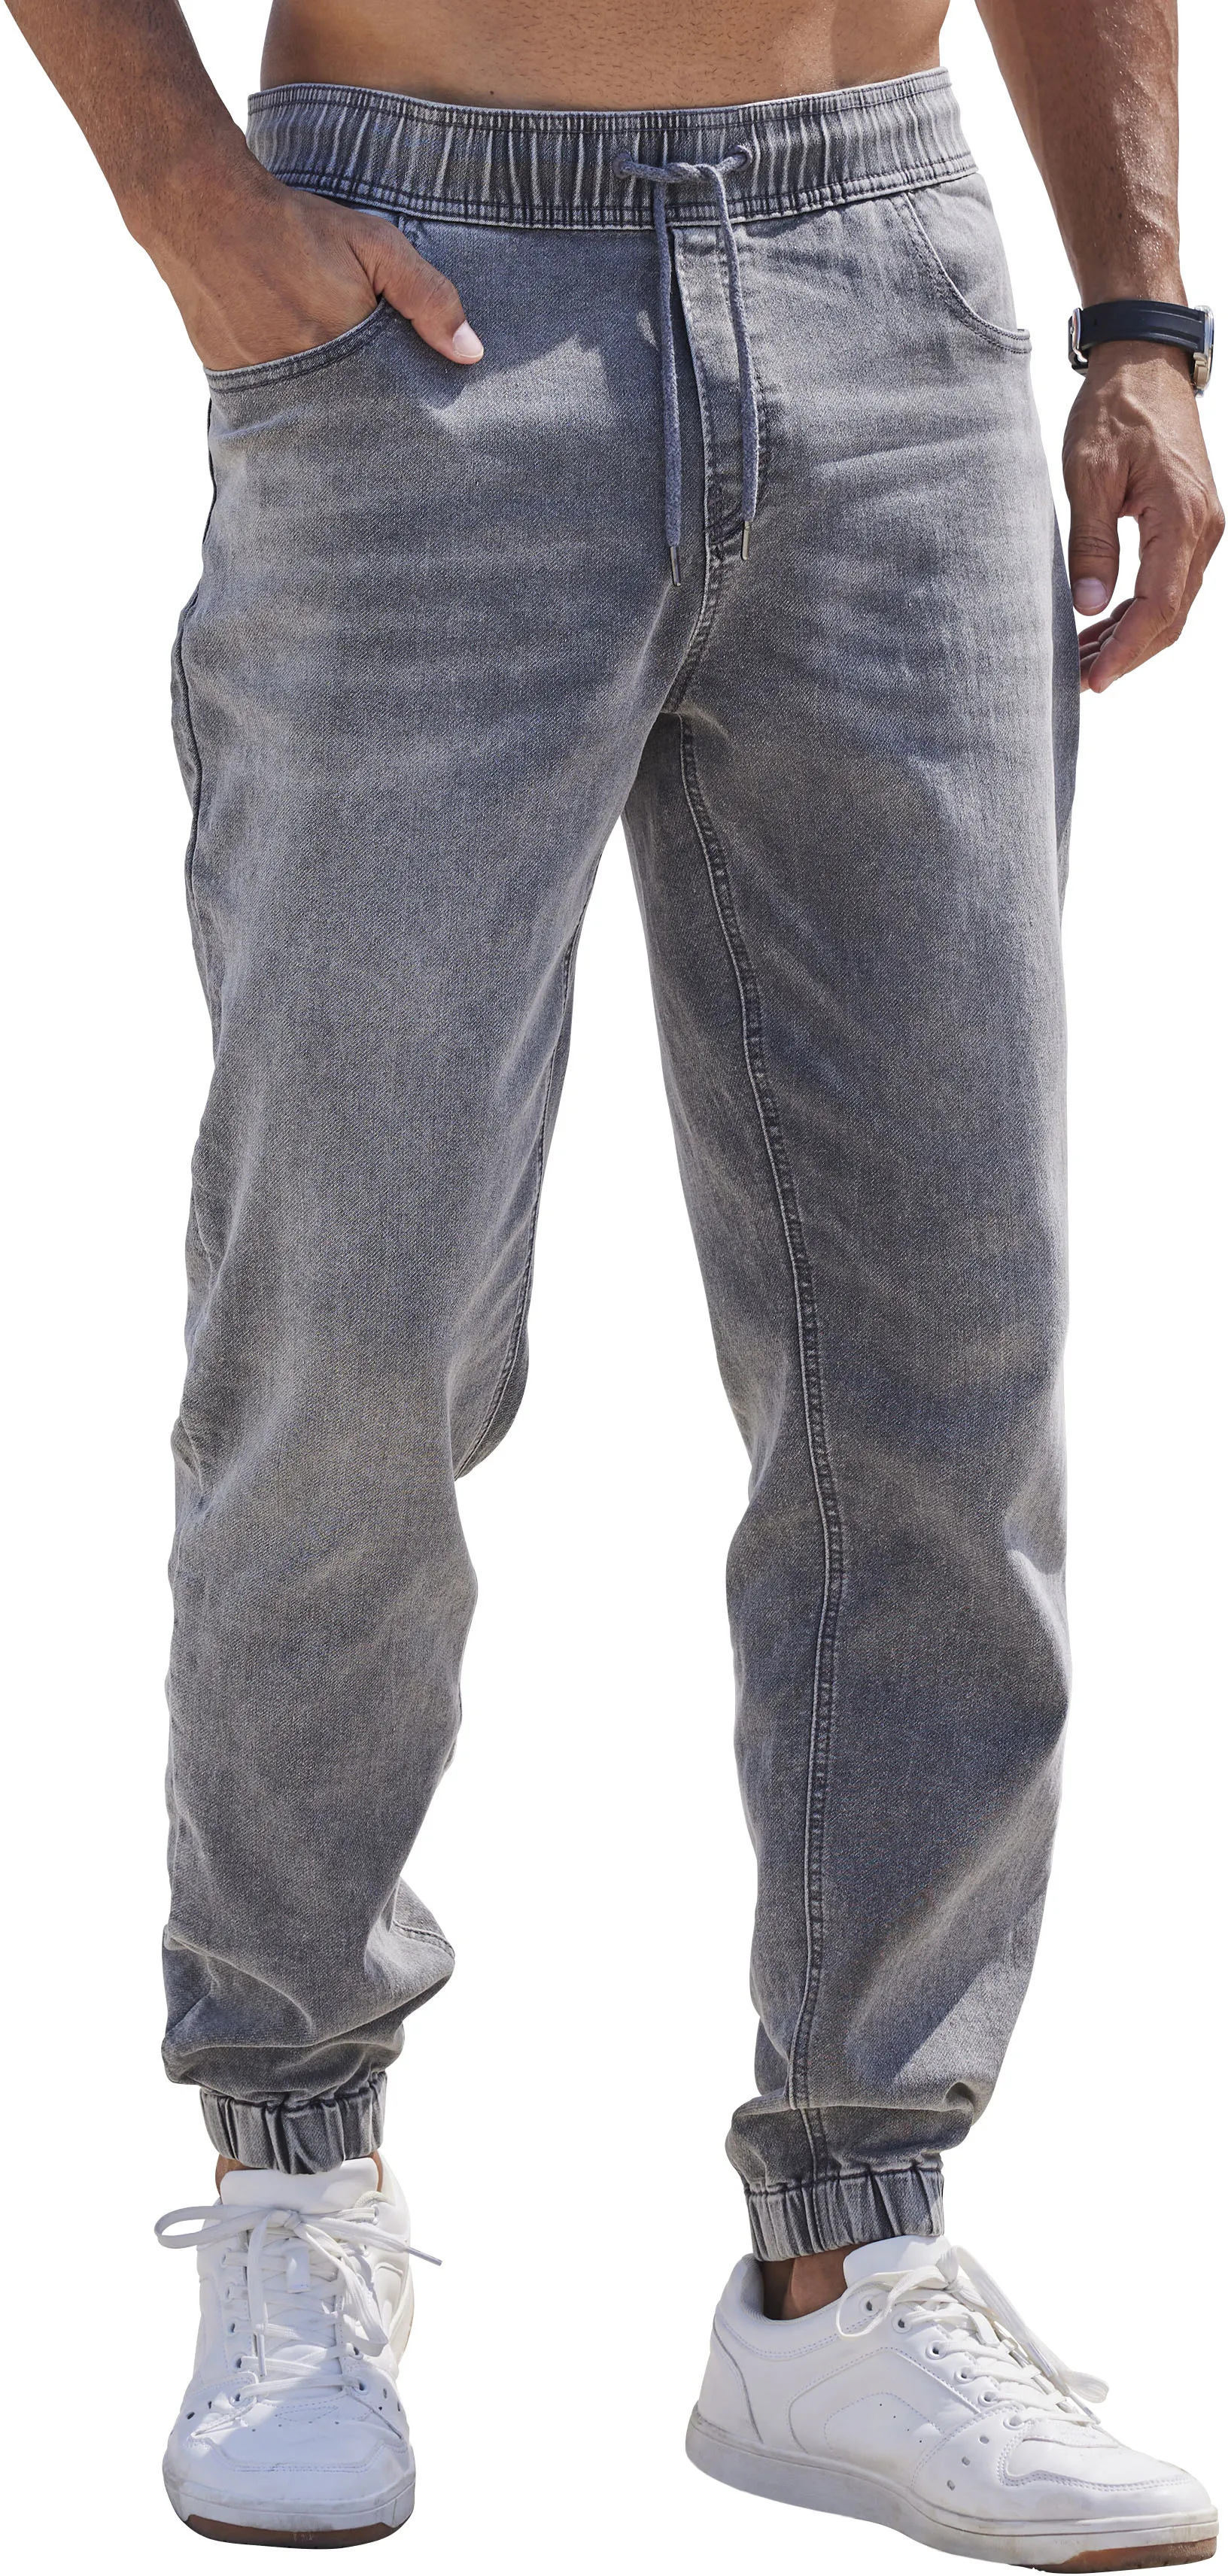 Schlupfjeans JOHN DEVIN Gr. XL (56/58), N-Gr, grau (grey, denim) Herren Jeans Denim Jogg Pants, Jeanshose mit Stretch, Baumwollmischung